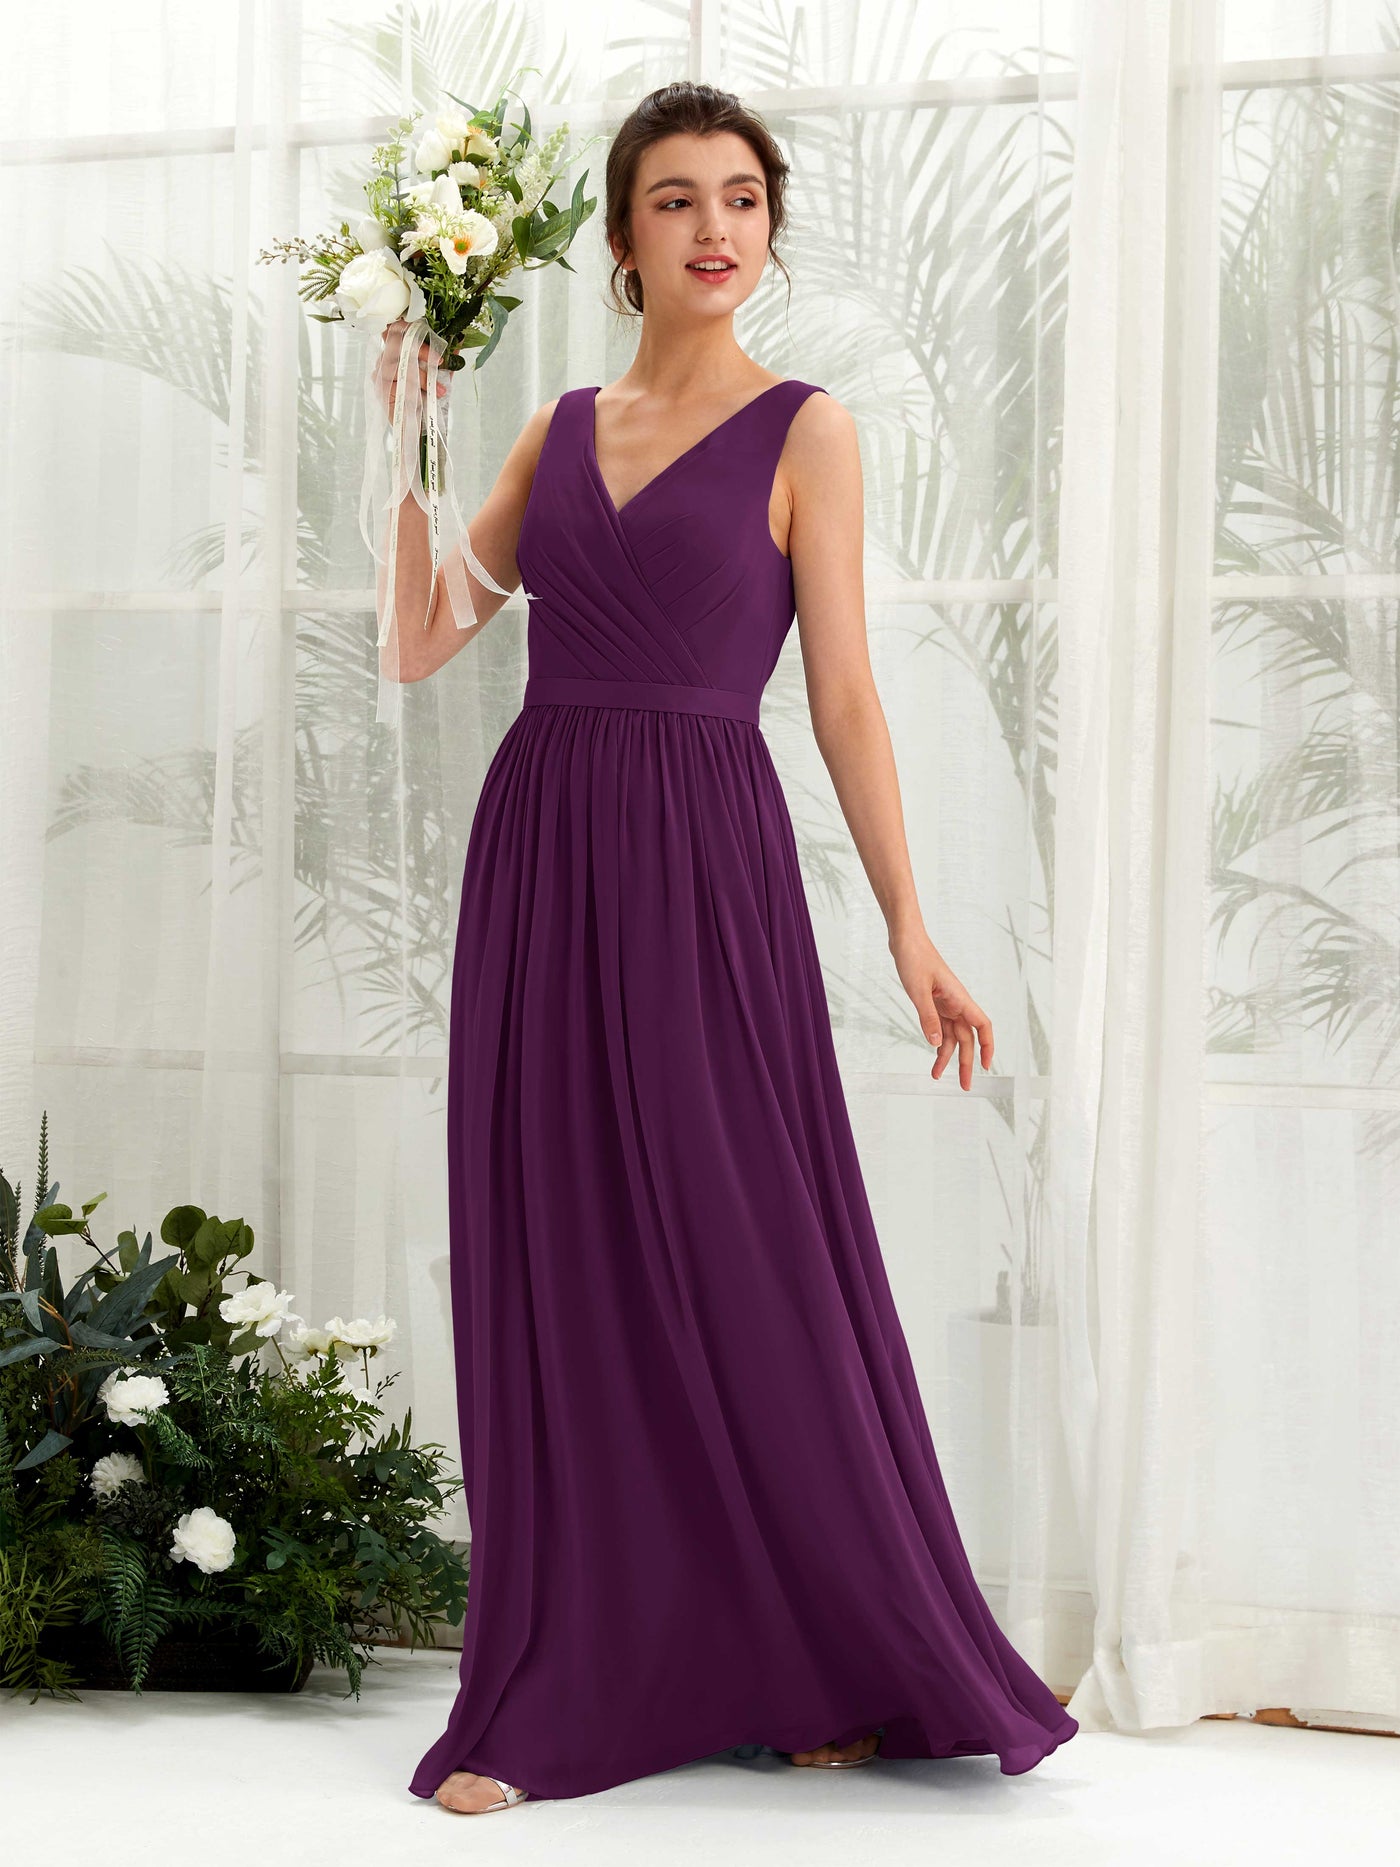 Grape Bridesmaid Dresses Bridesmaid Dress A-line Chiffon V-neck Full Length Sleeveless Wedding Party Dress (81223631)#color_grape